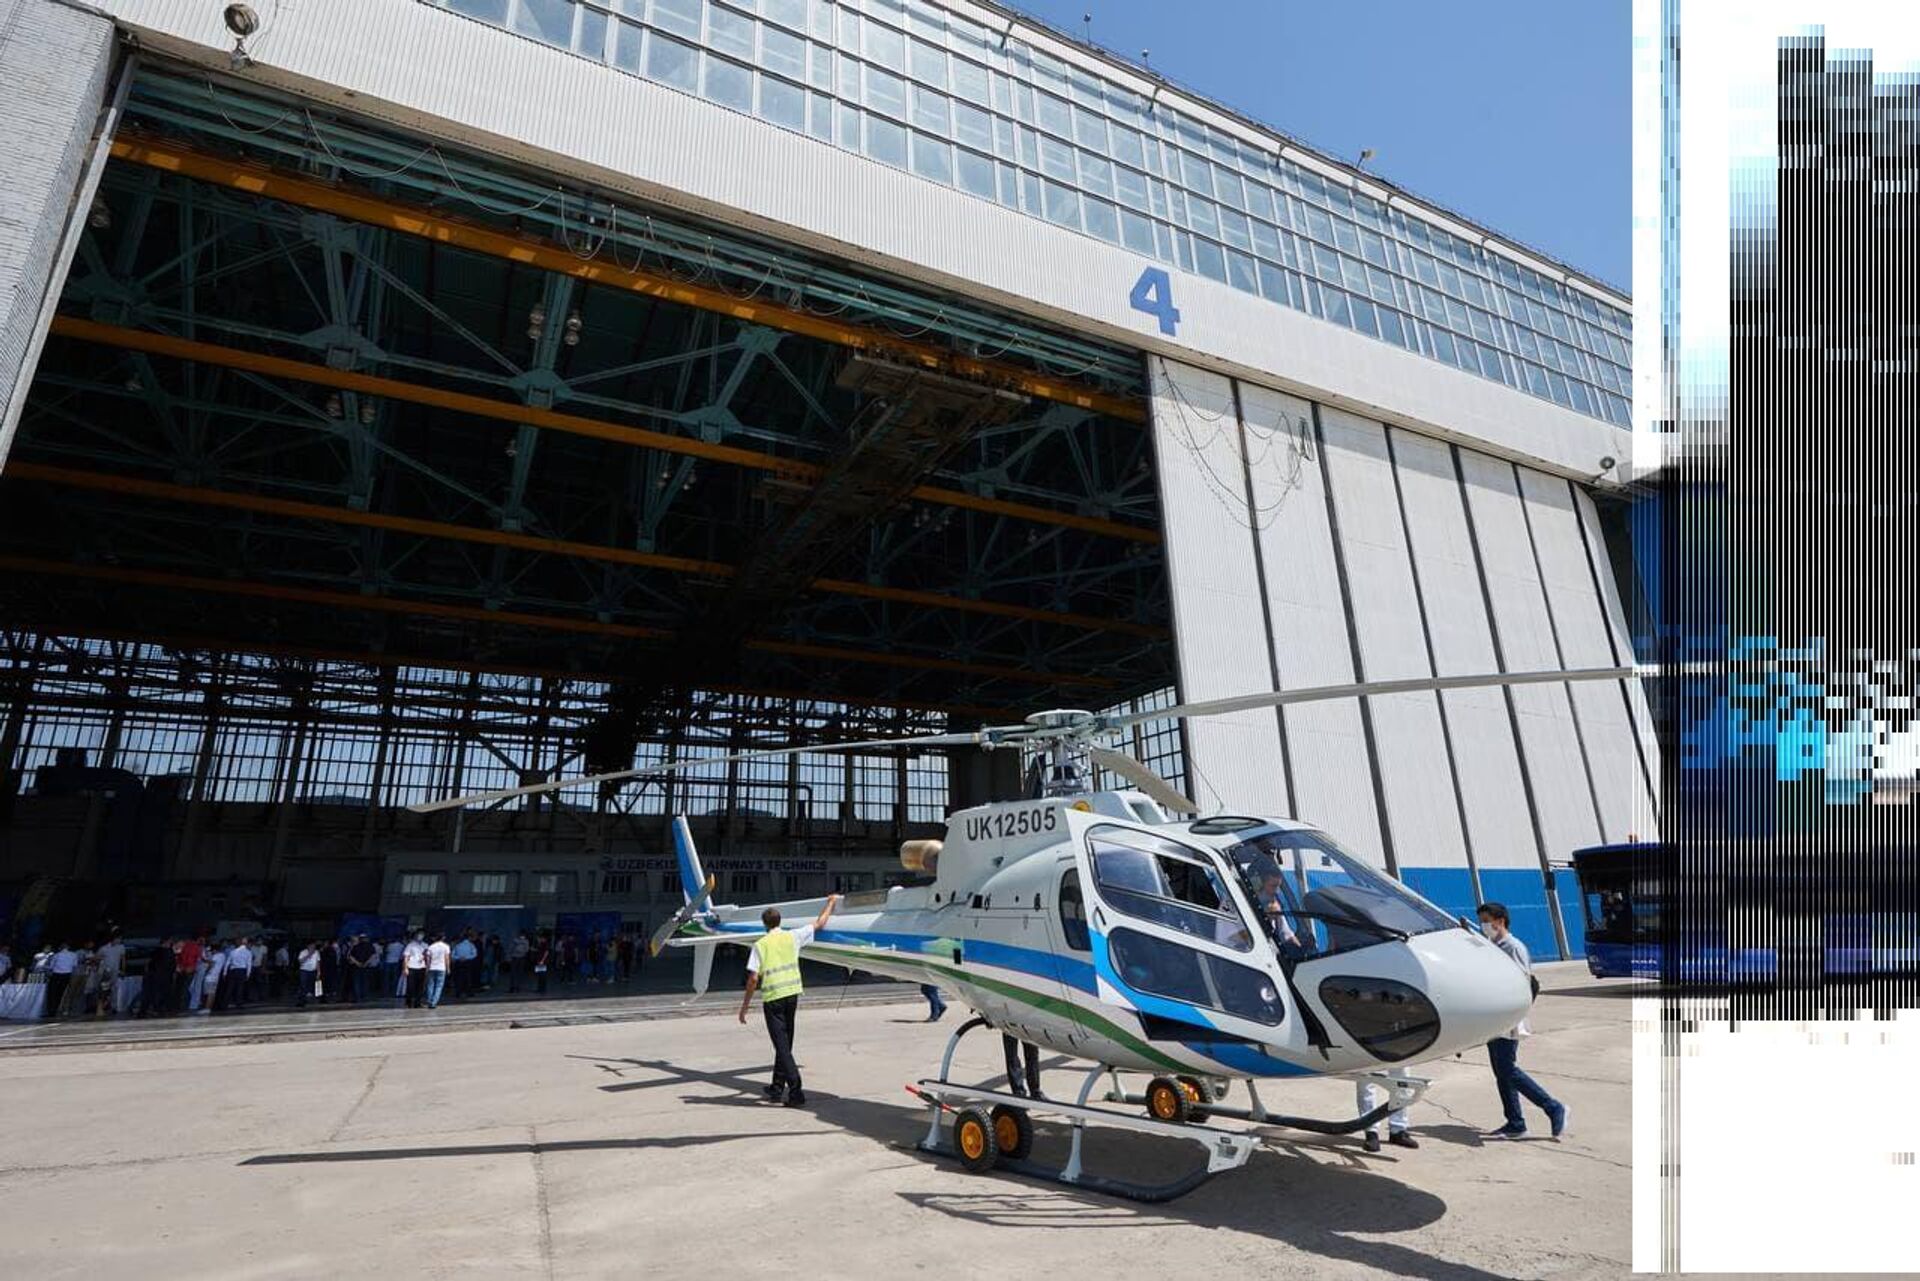 Uzbekistan Helicopters provel prezentatsiyu vertoletov Airbus H125 i Mi-8MTV - Sputnik O‘zbekiston, 1920, 01.08.2021